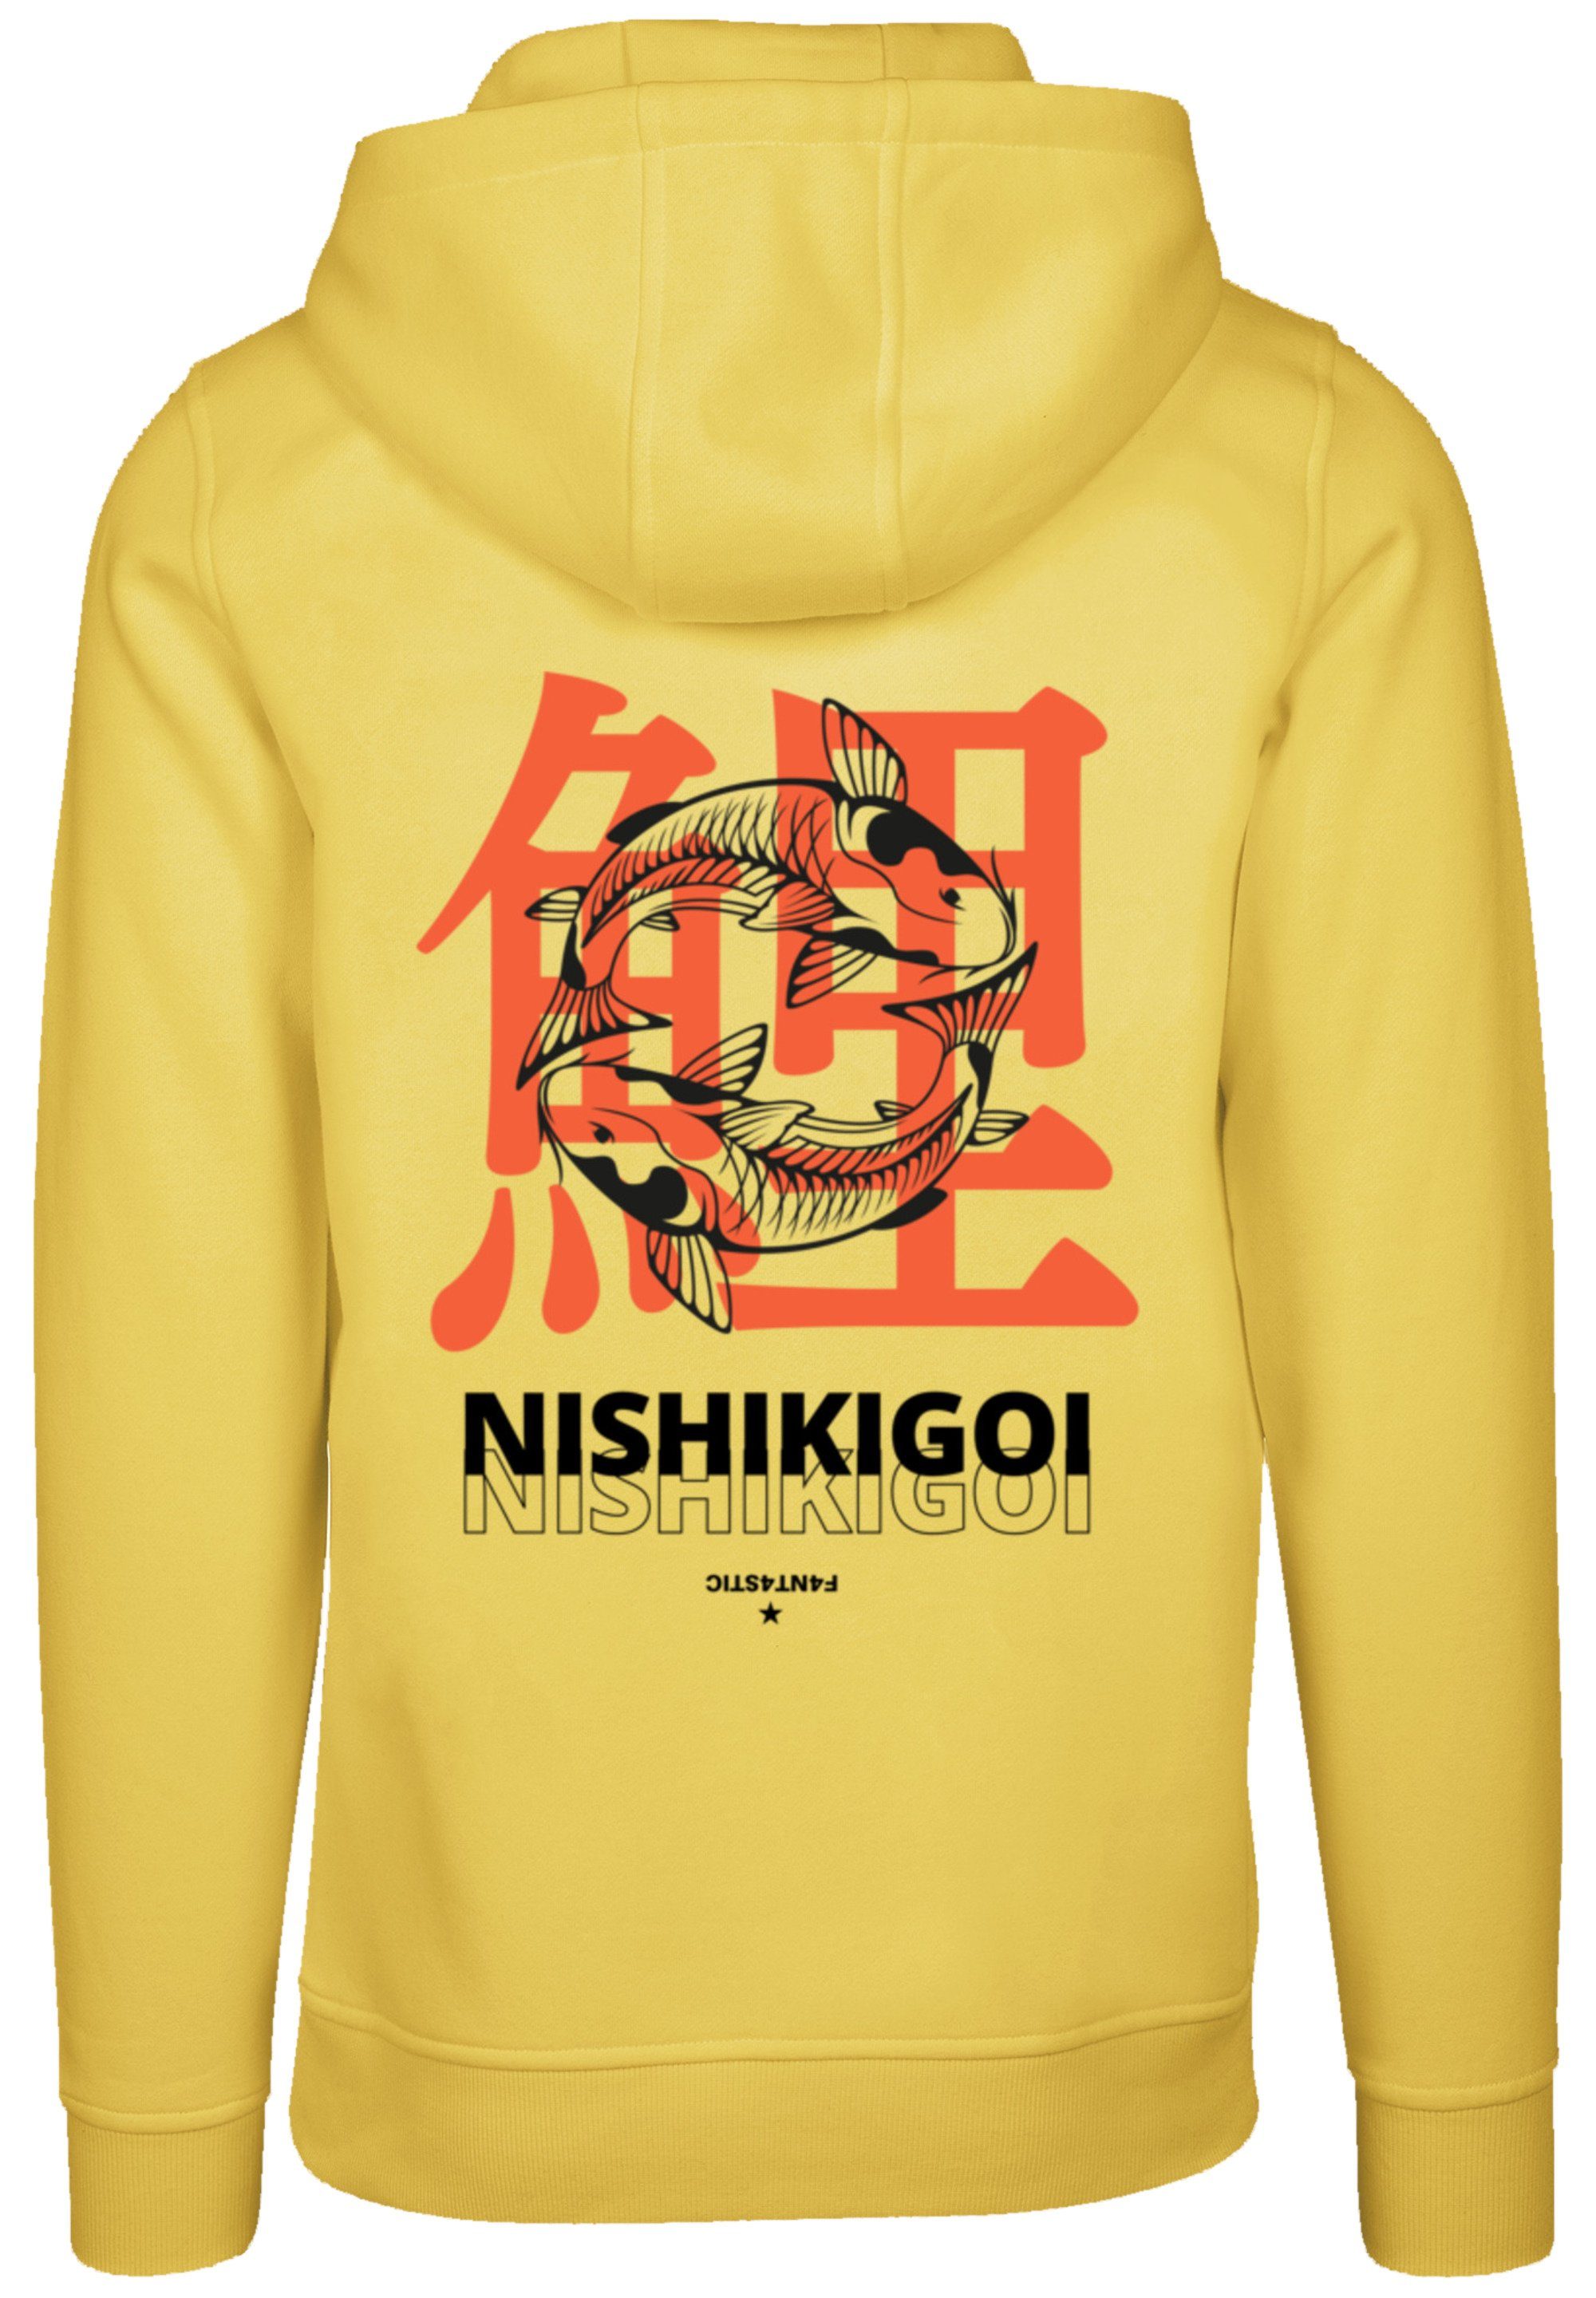 F4NT4STIC Bequem yellow Kapuzenpullover Hoodie, Warm, taxi Nishikigoi